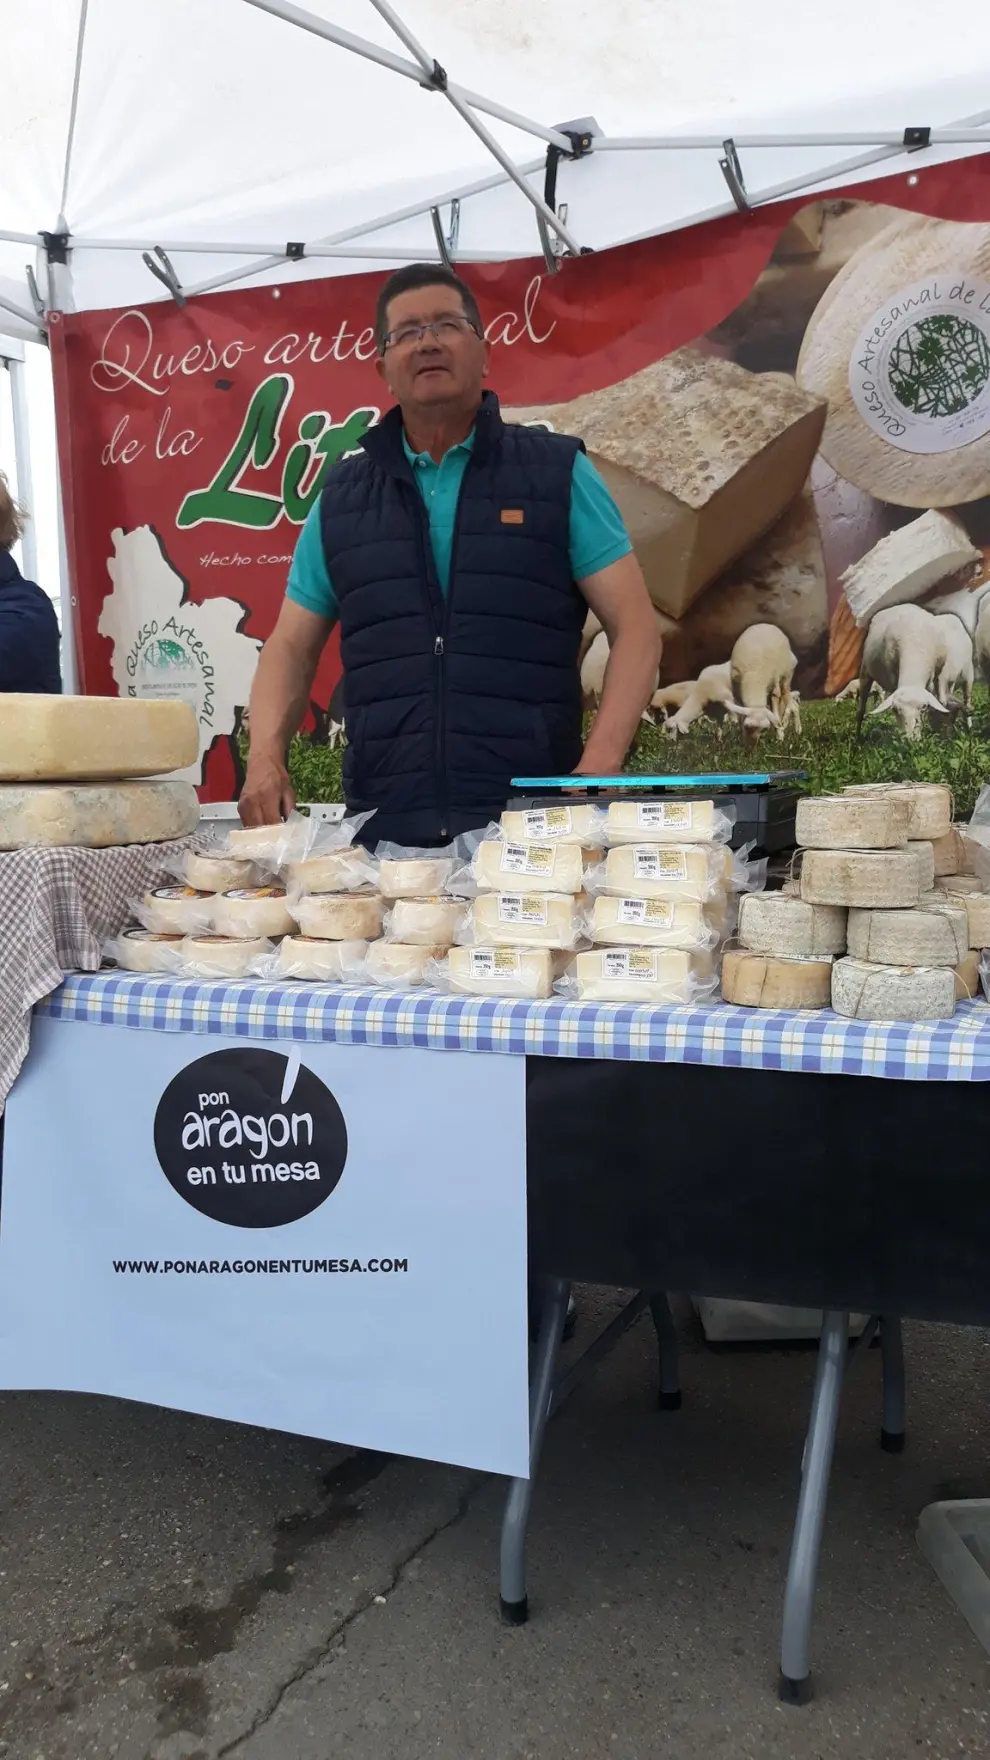 En el mercado también habrá quesos artesanales de La Litera.